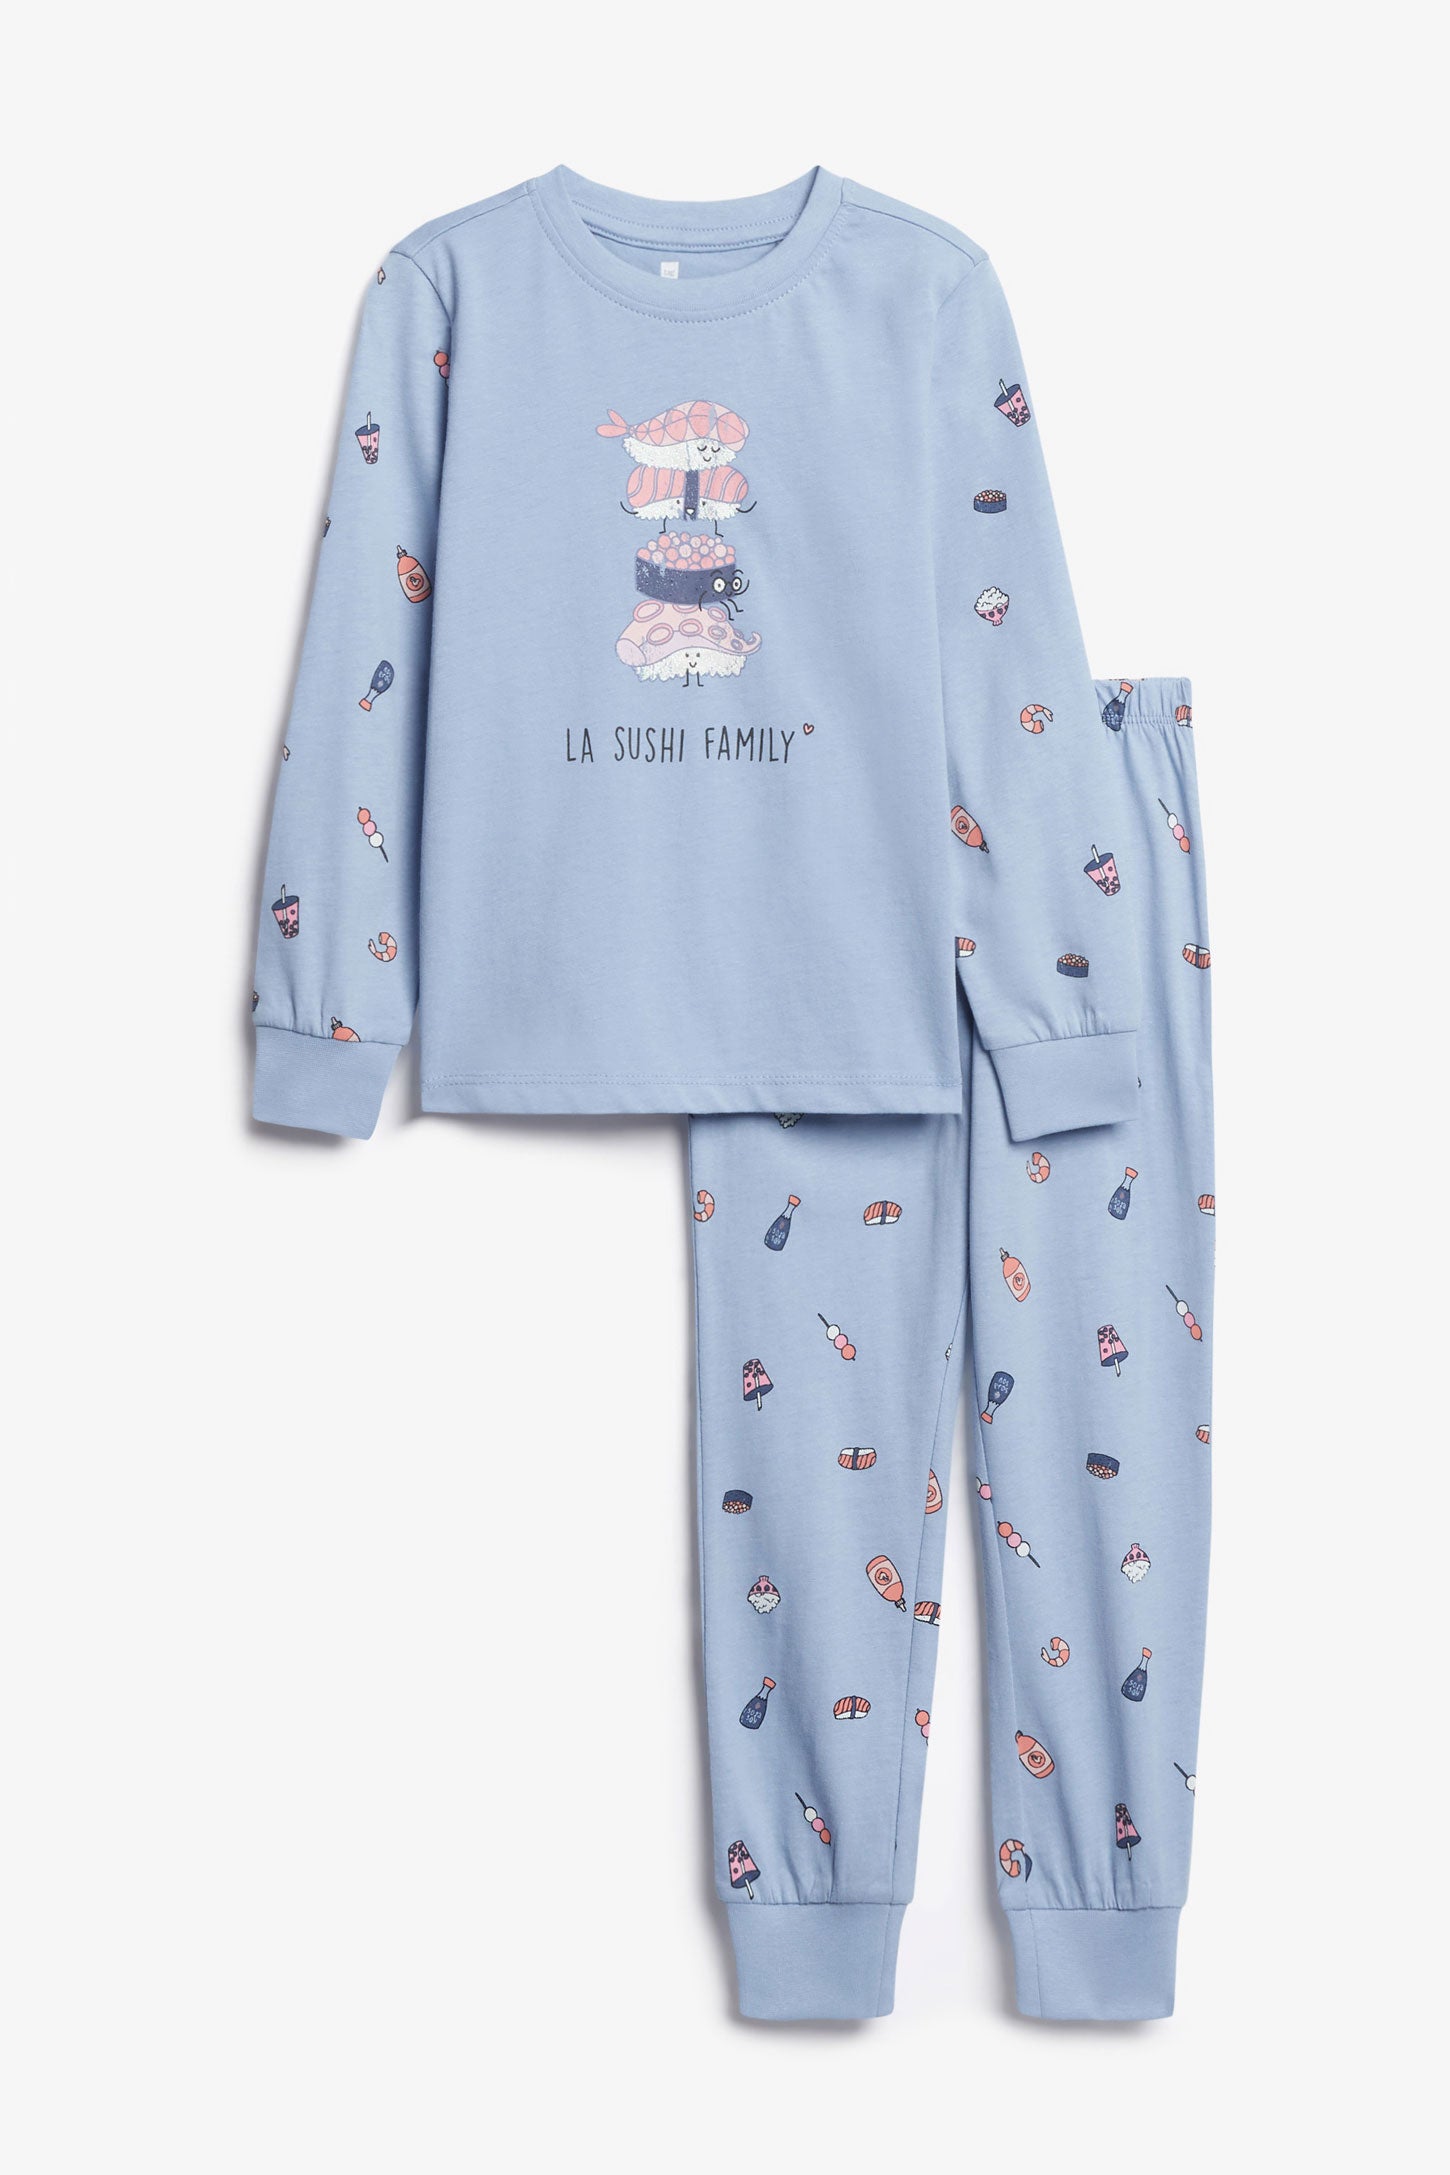 Duos futés, Pyjama 2-pièces en coton, 2/35$ - Enfant fille && BLEU